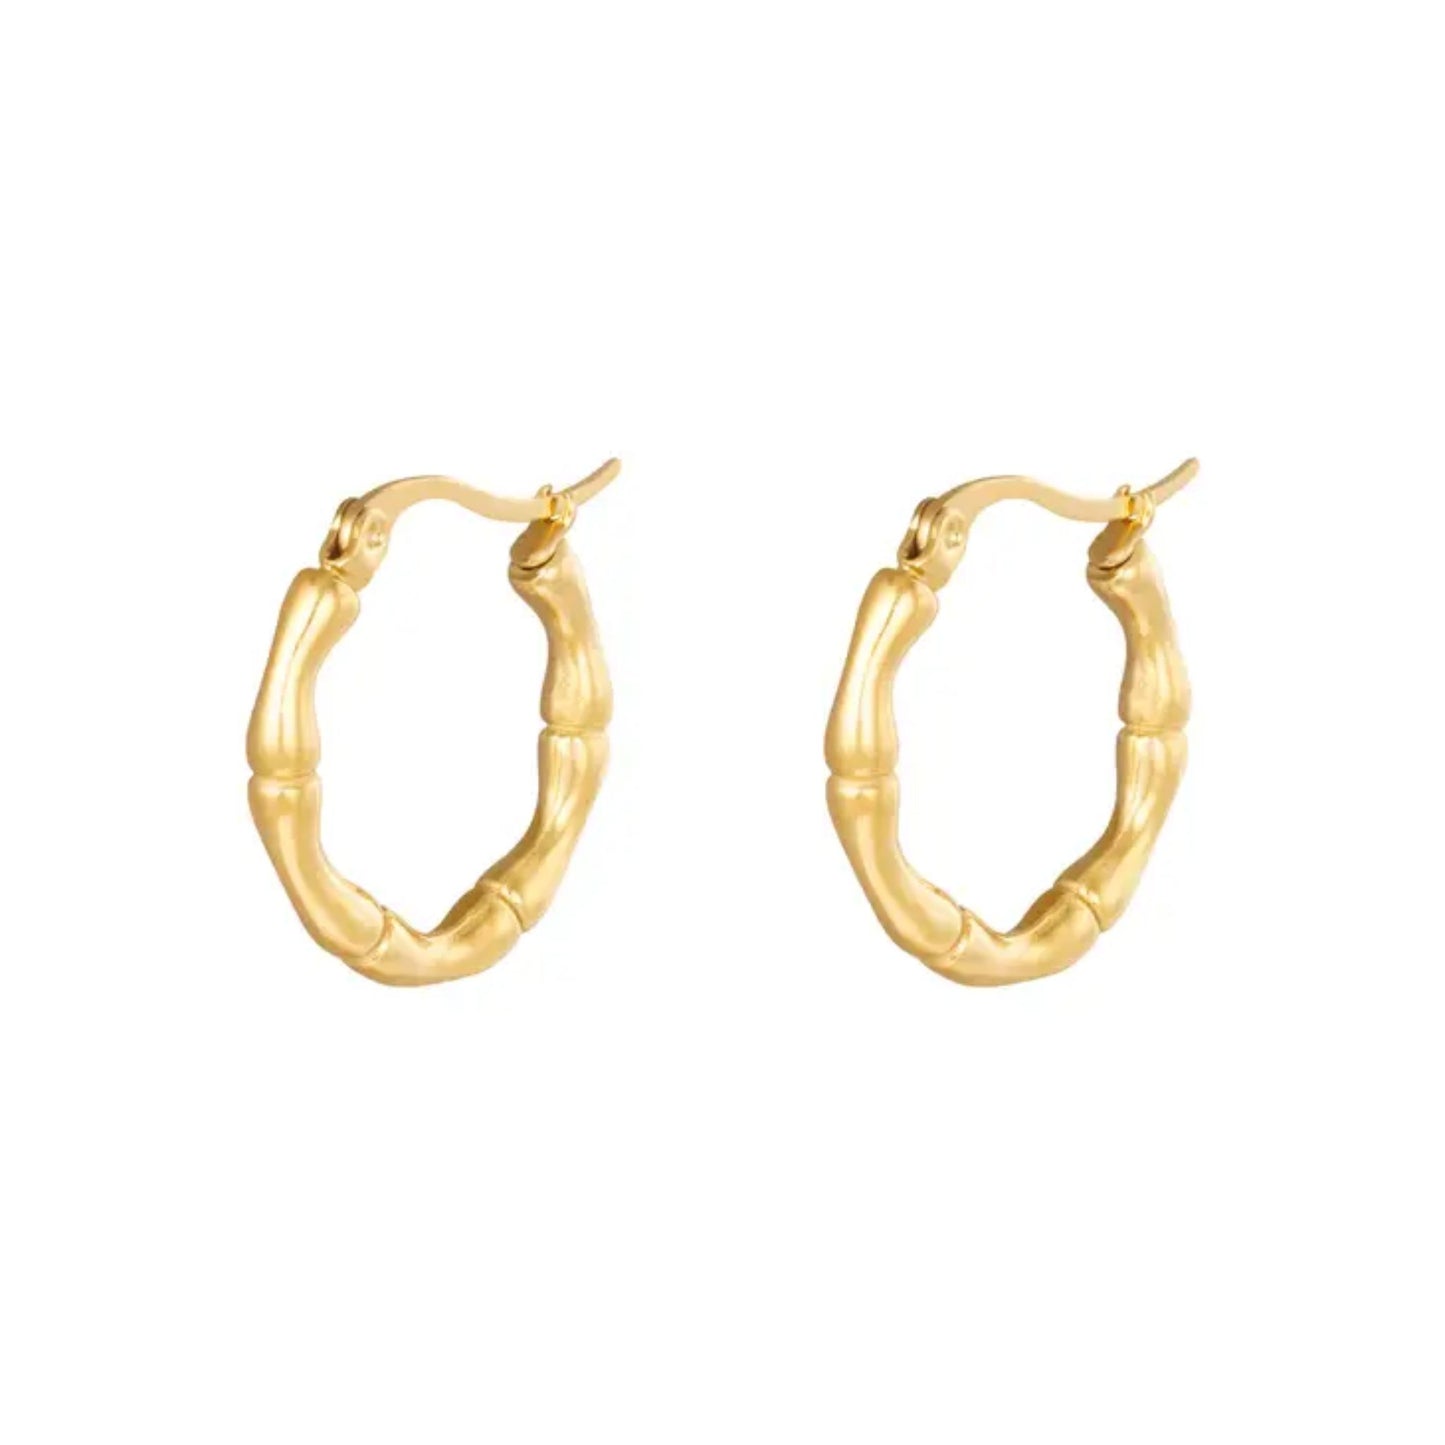 Small & Medium Gold Bamboo Hoop Earrings